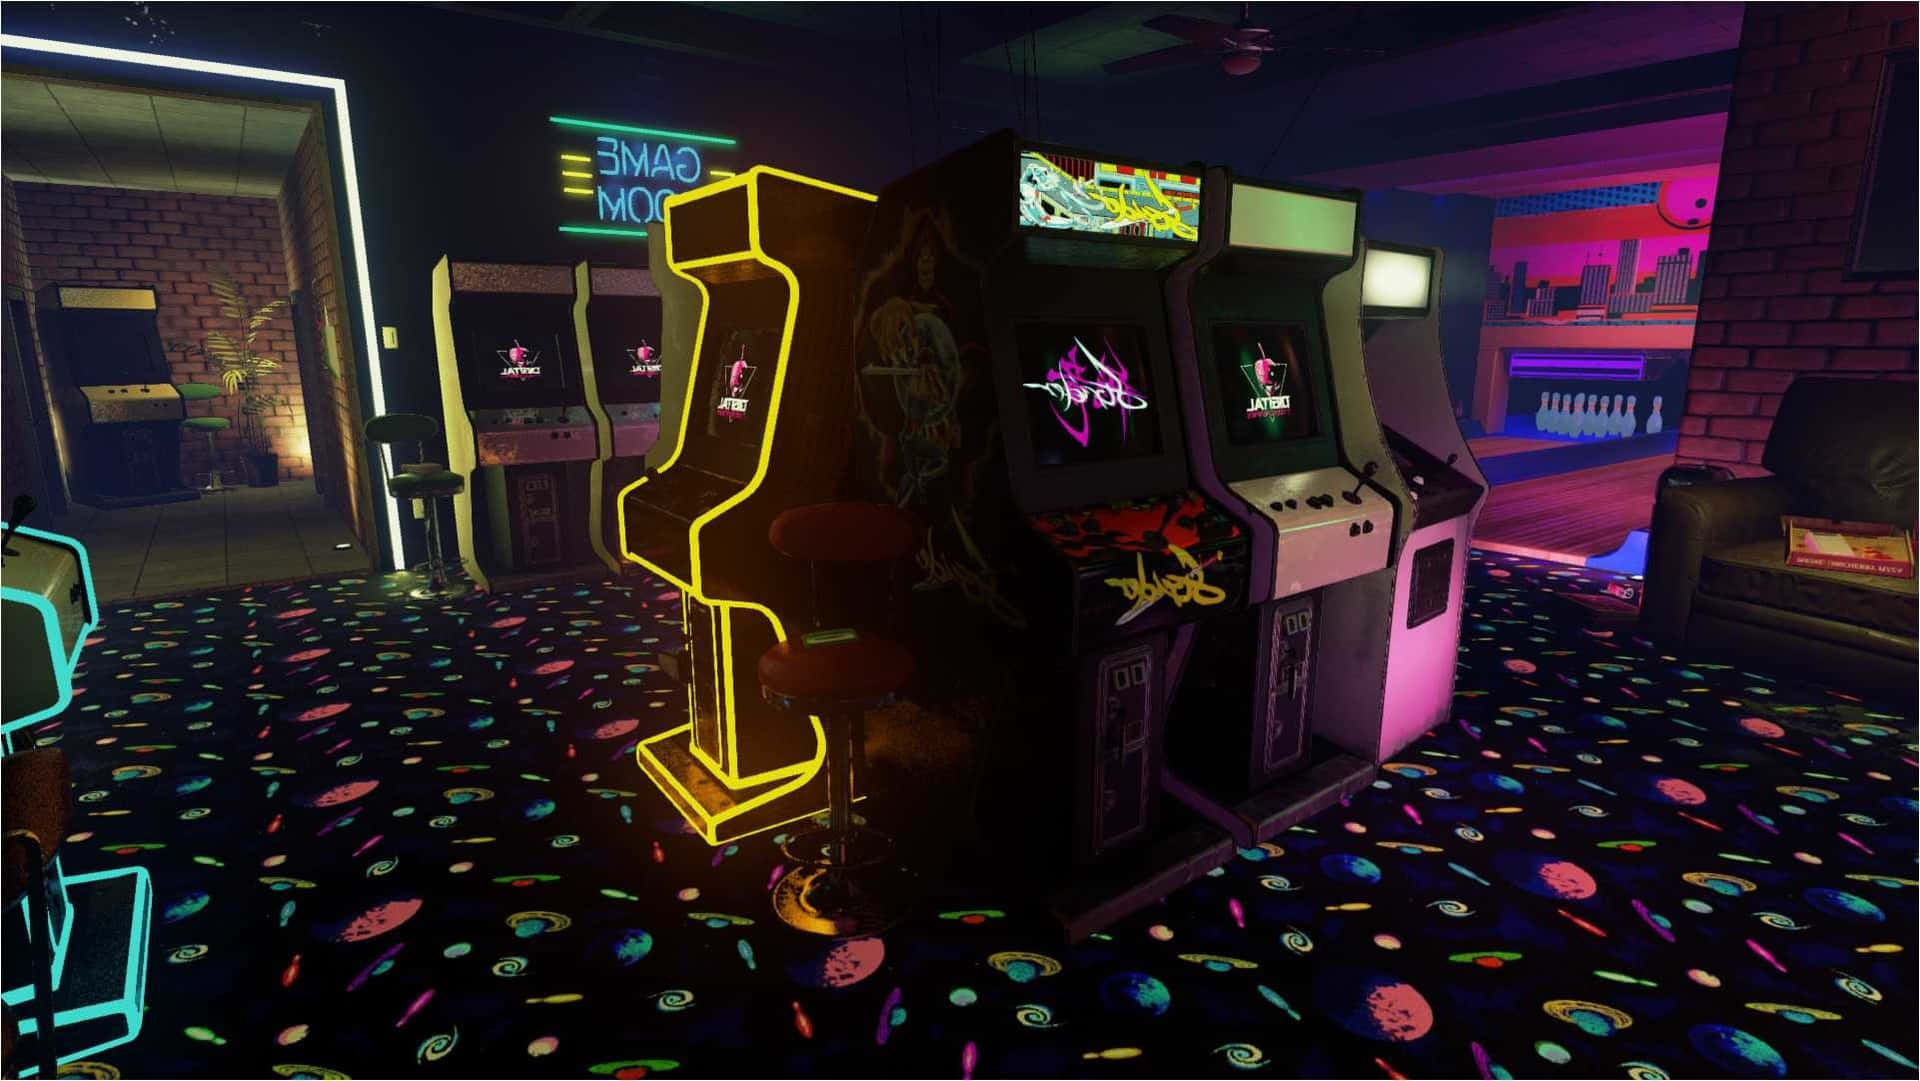 Unaemocionante Visión De Nostalgia, Este Arcade Retro De Los Años 80 Crea La Experiencia Perfecta De Volver Al Pasado. Fondo de pantalla